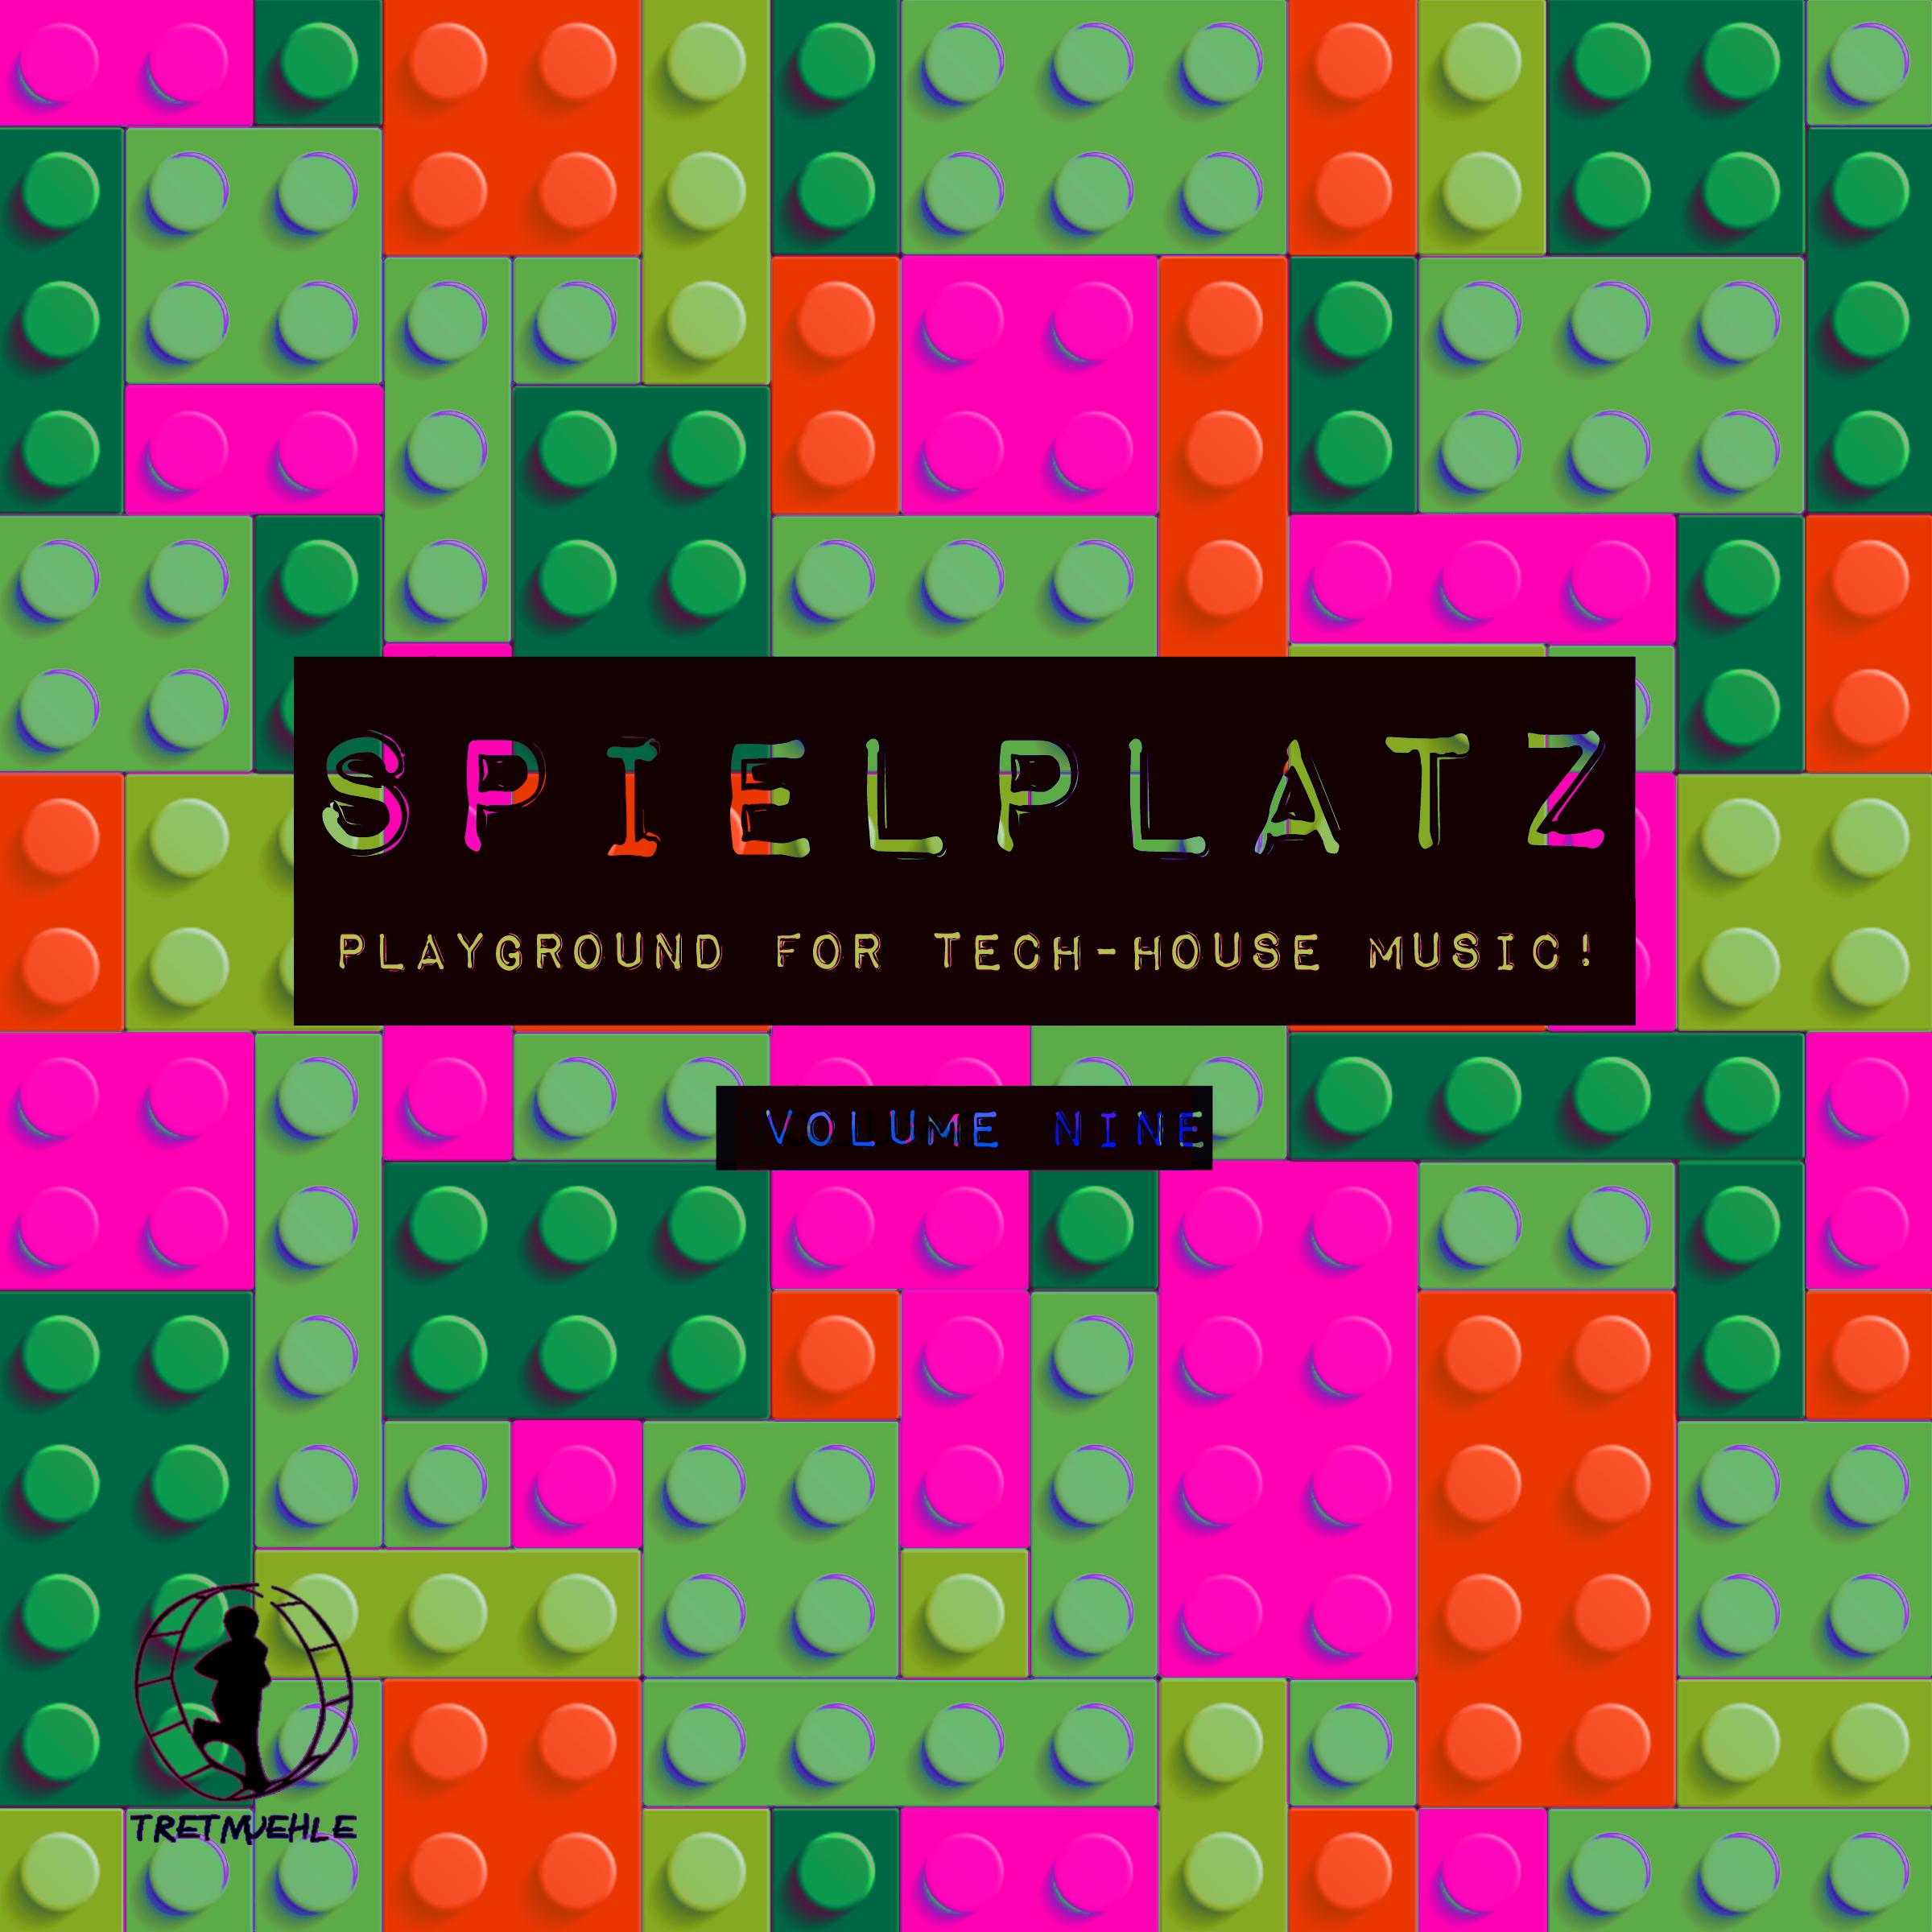 Spielplatz, Vol. 9 - Playground for Tech-House Music